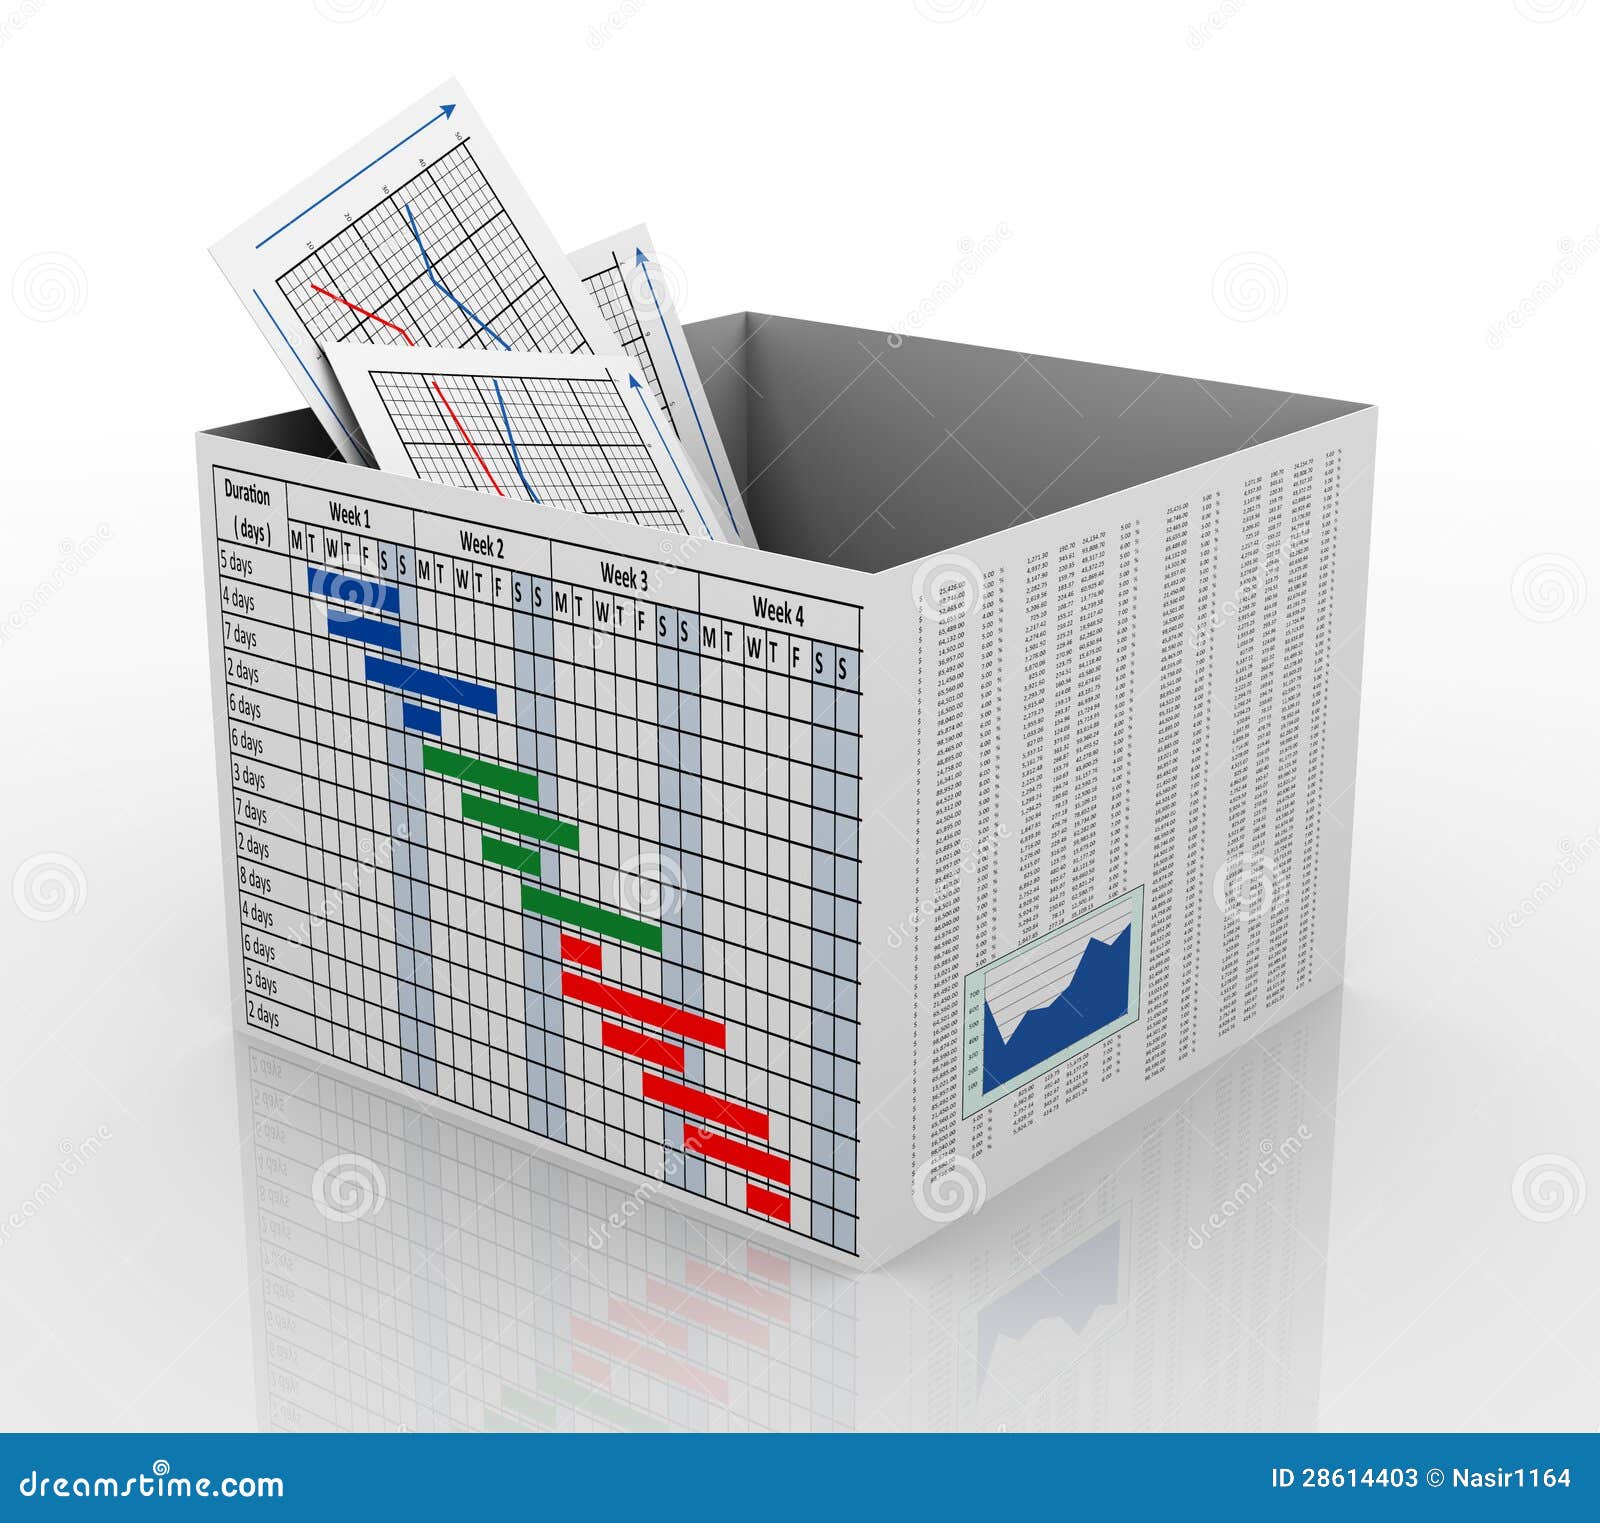 Box Stock Chart